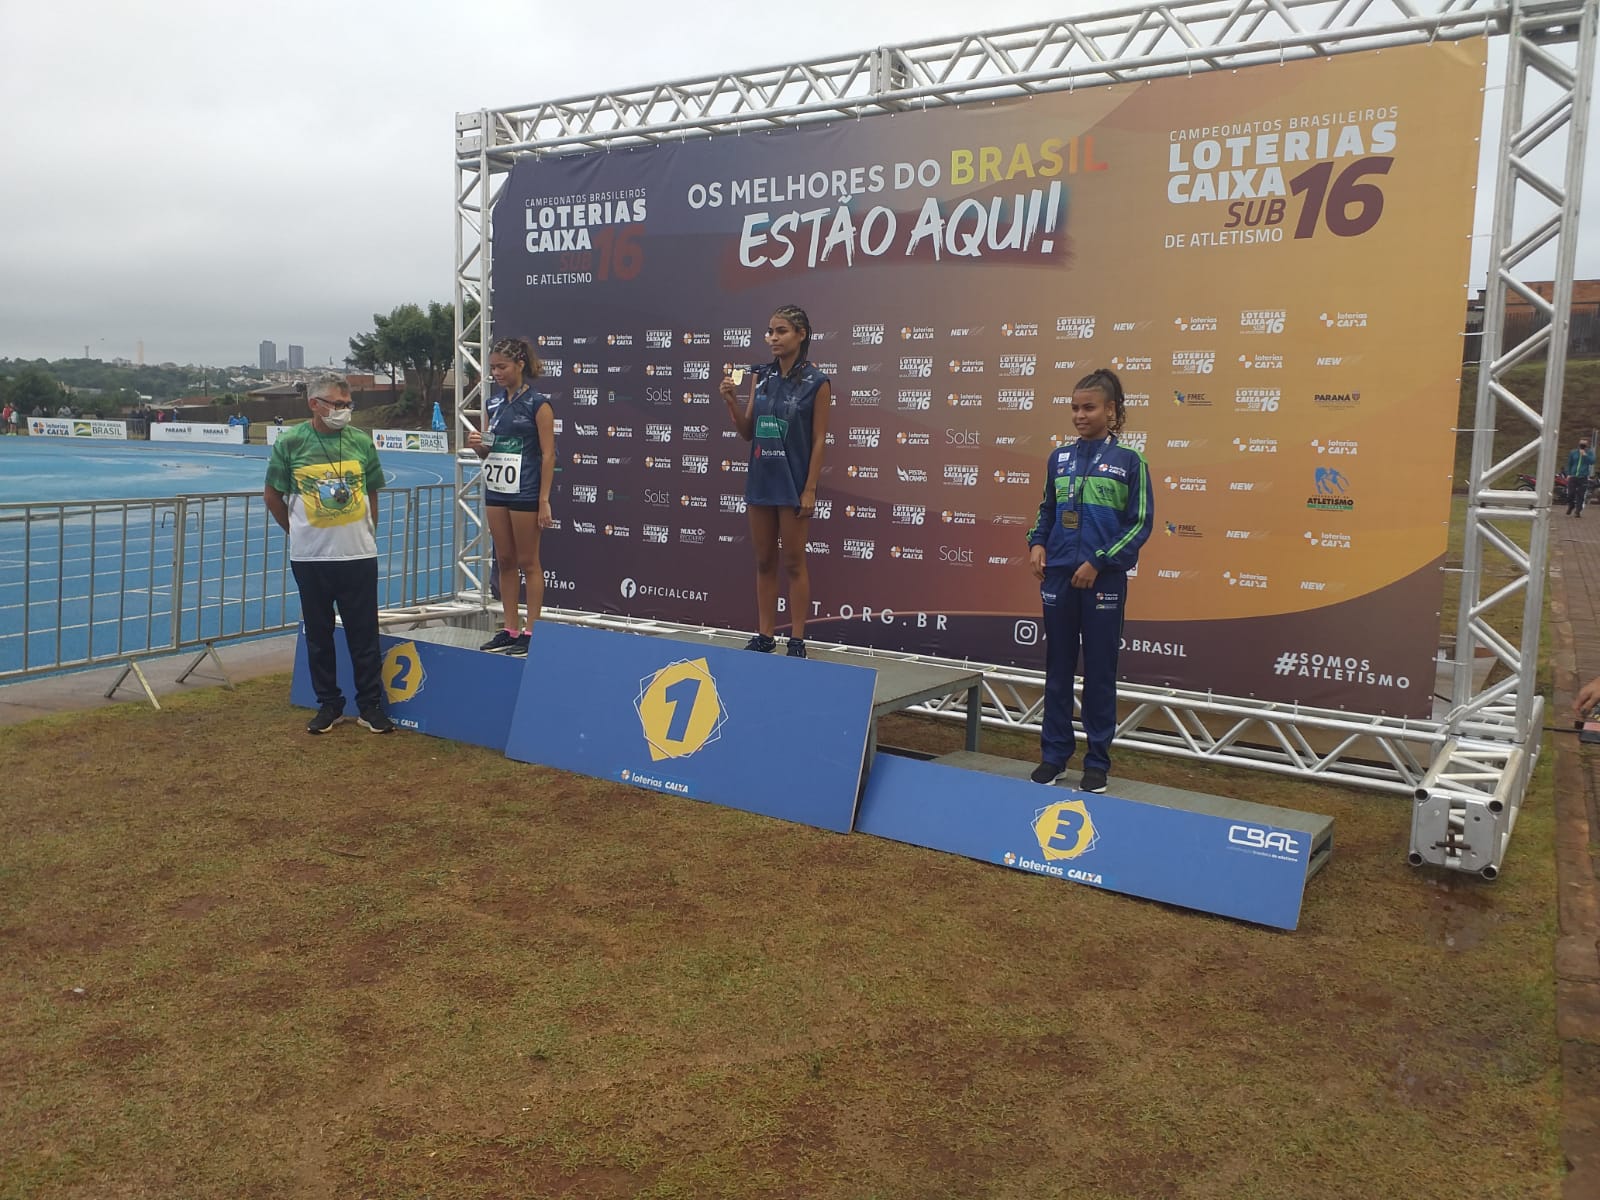 Raiane Costa e Emille Tainara se consagraram campeã e vice no campeonato brasileiro sub 16 em Cascavel- PR